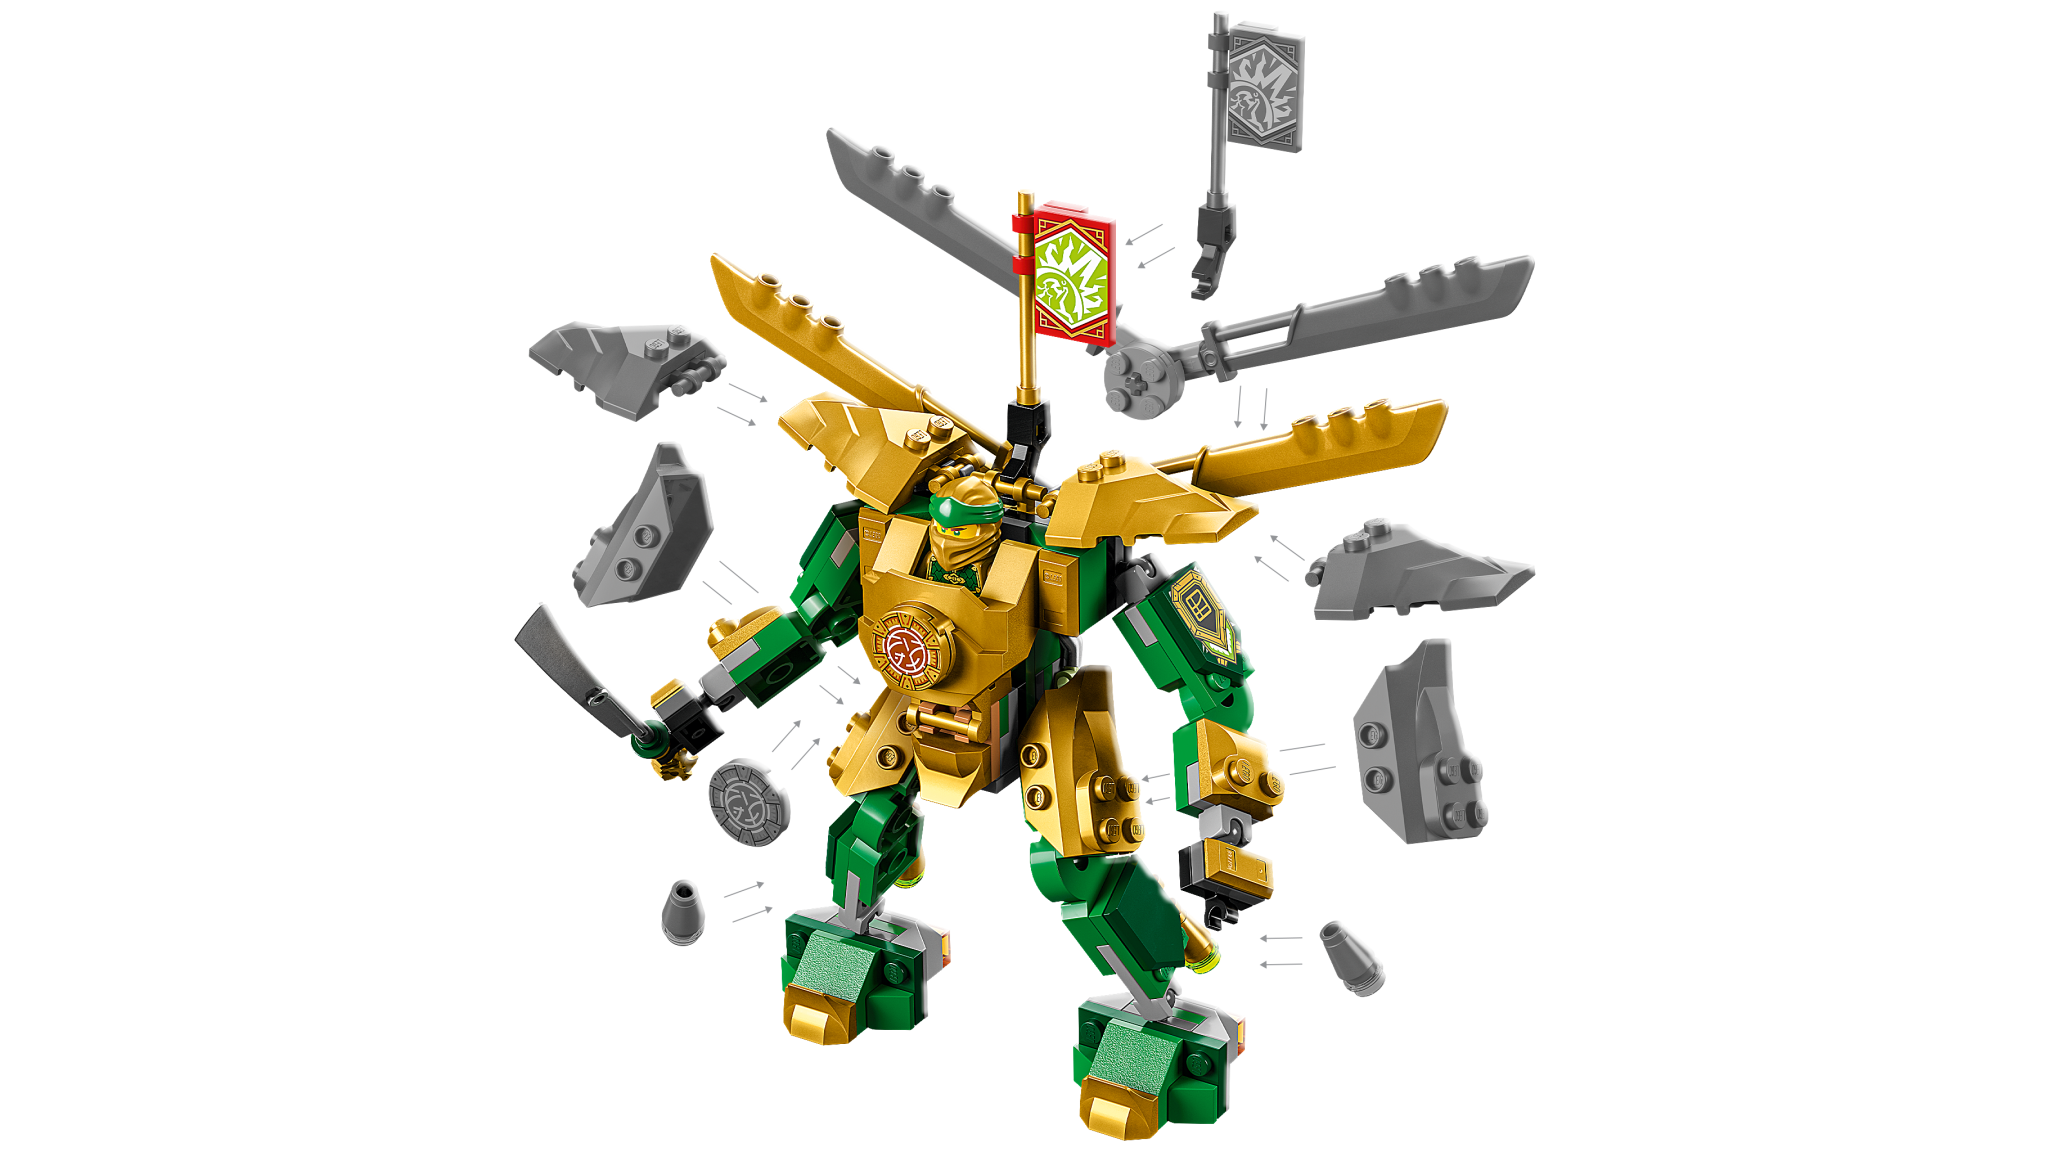 Lego 71781 Ninjago - Le robot de combat de Lloyd EVO - Maitre des Jeux